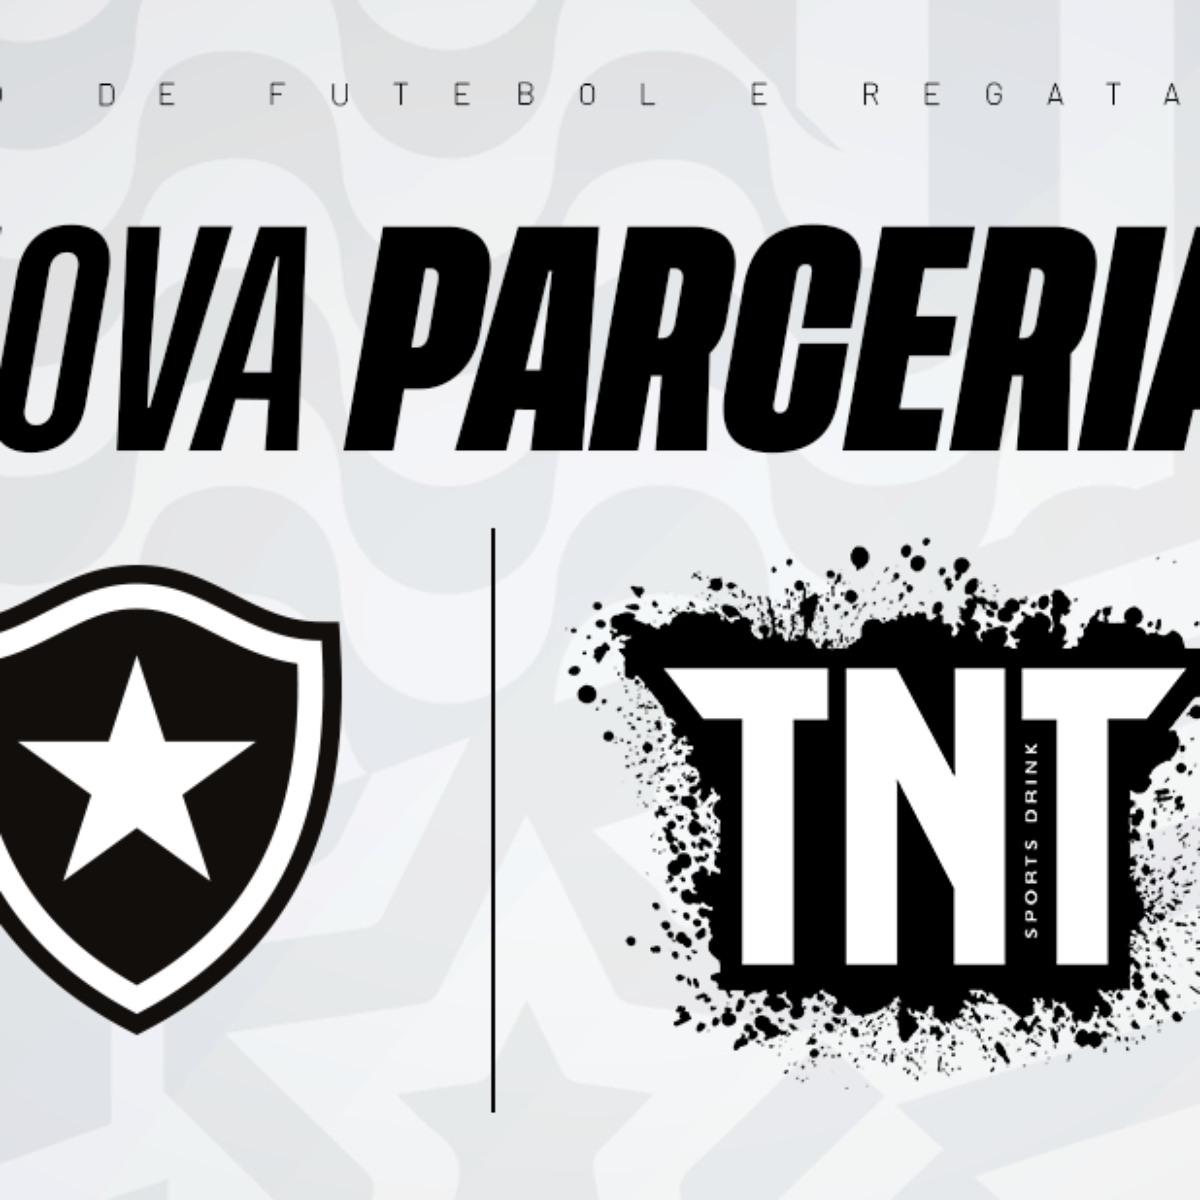 AGORA É OFICIAL: O Botafogo tem o - TNT Sports Brasil